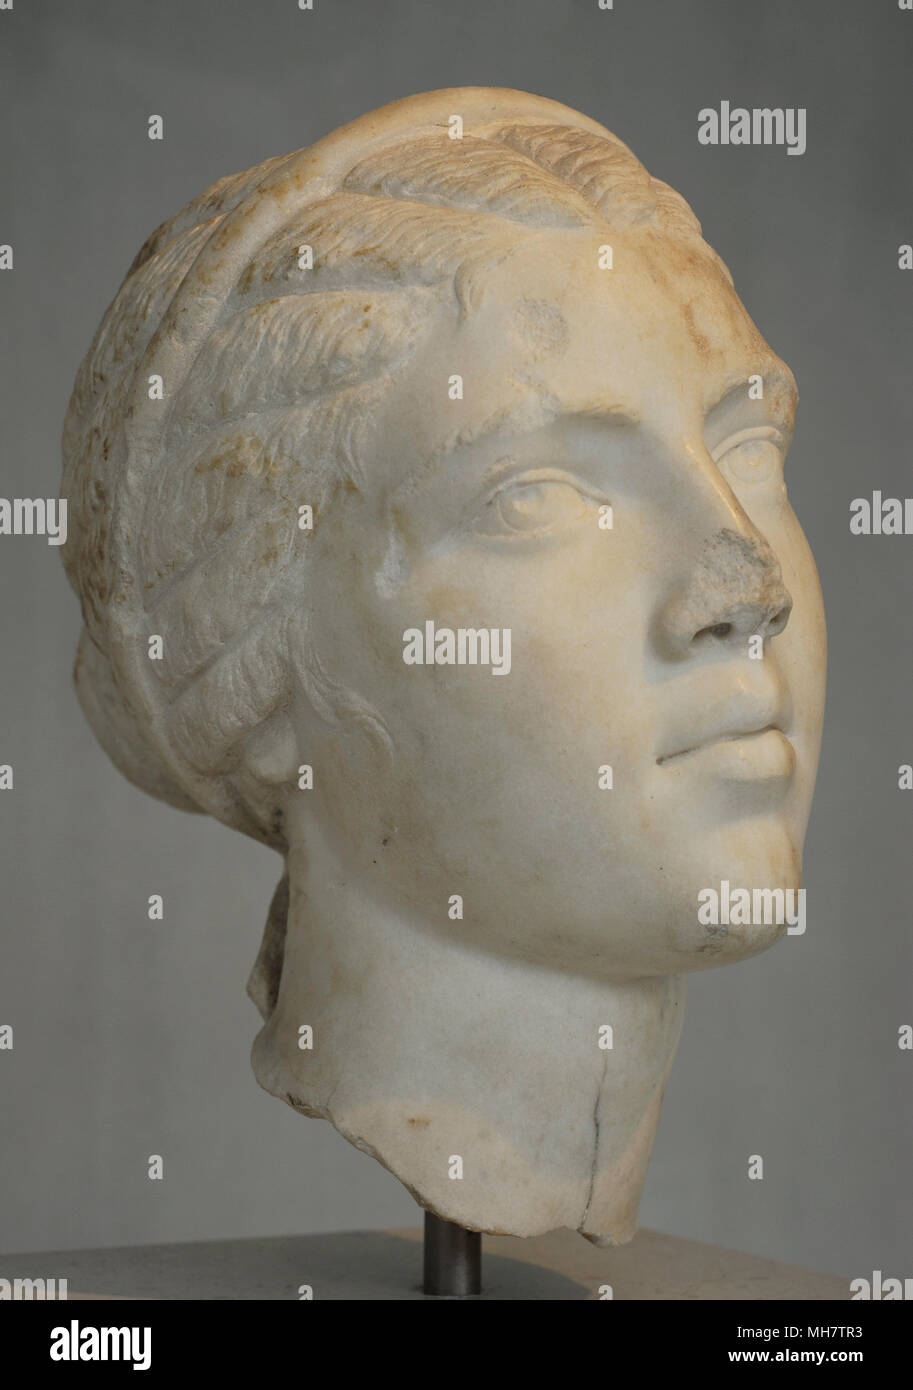 Fulvia Plautilla (C. 185-211). Die einzige Frau des Römischen Kaiser Caracalla. Se verbannt wurde und eventurally getötet. Porträt. Späten 2. bis frühen 3. Jahrhundert n. Akropolis Museum. Athen. Griechenland. Stockfoto